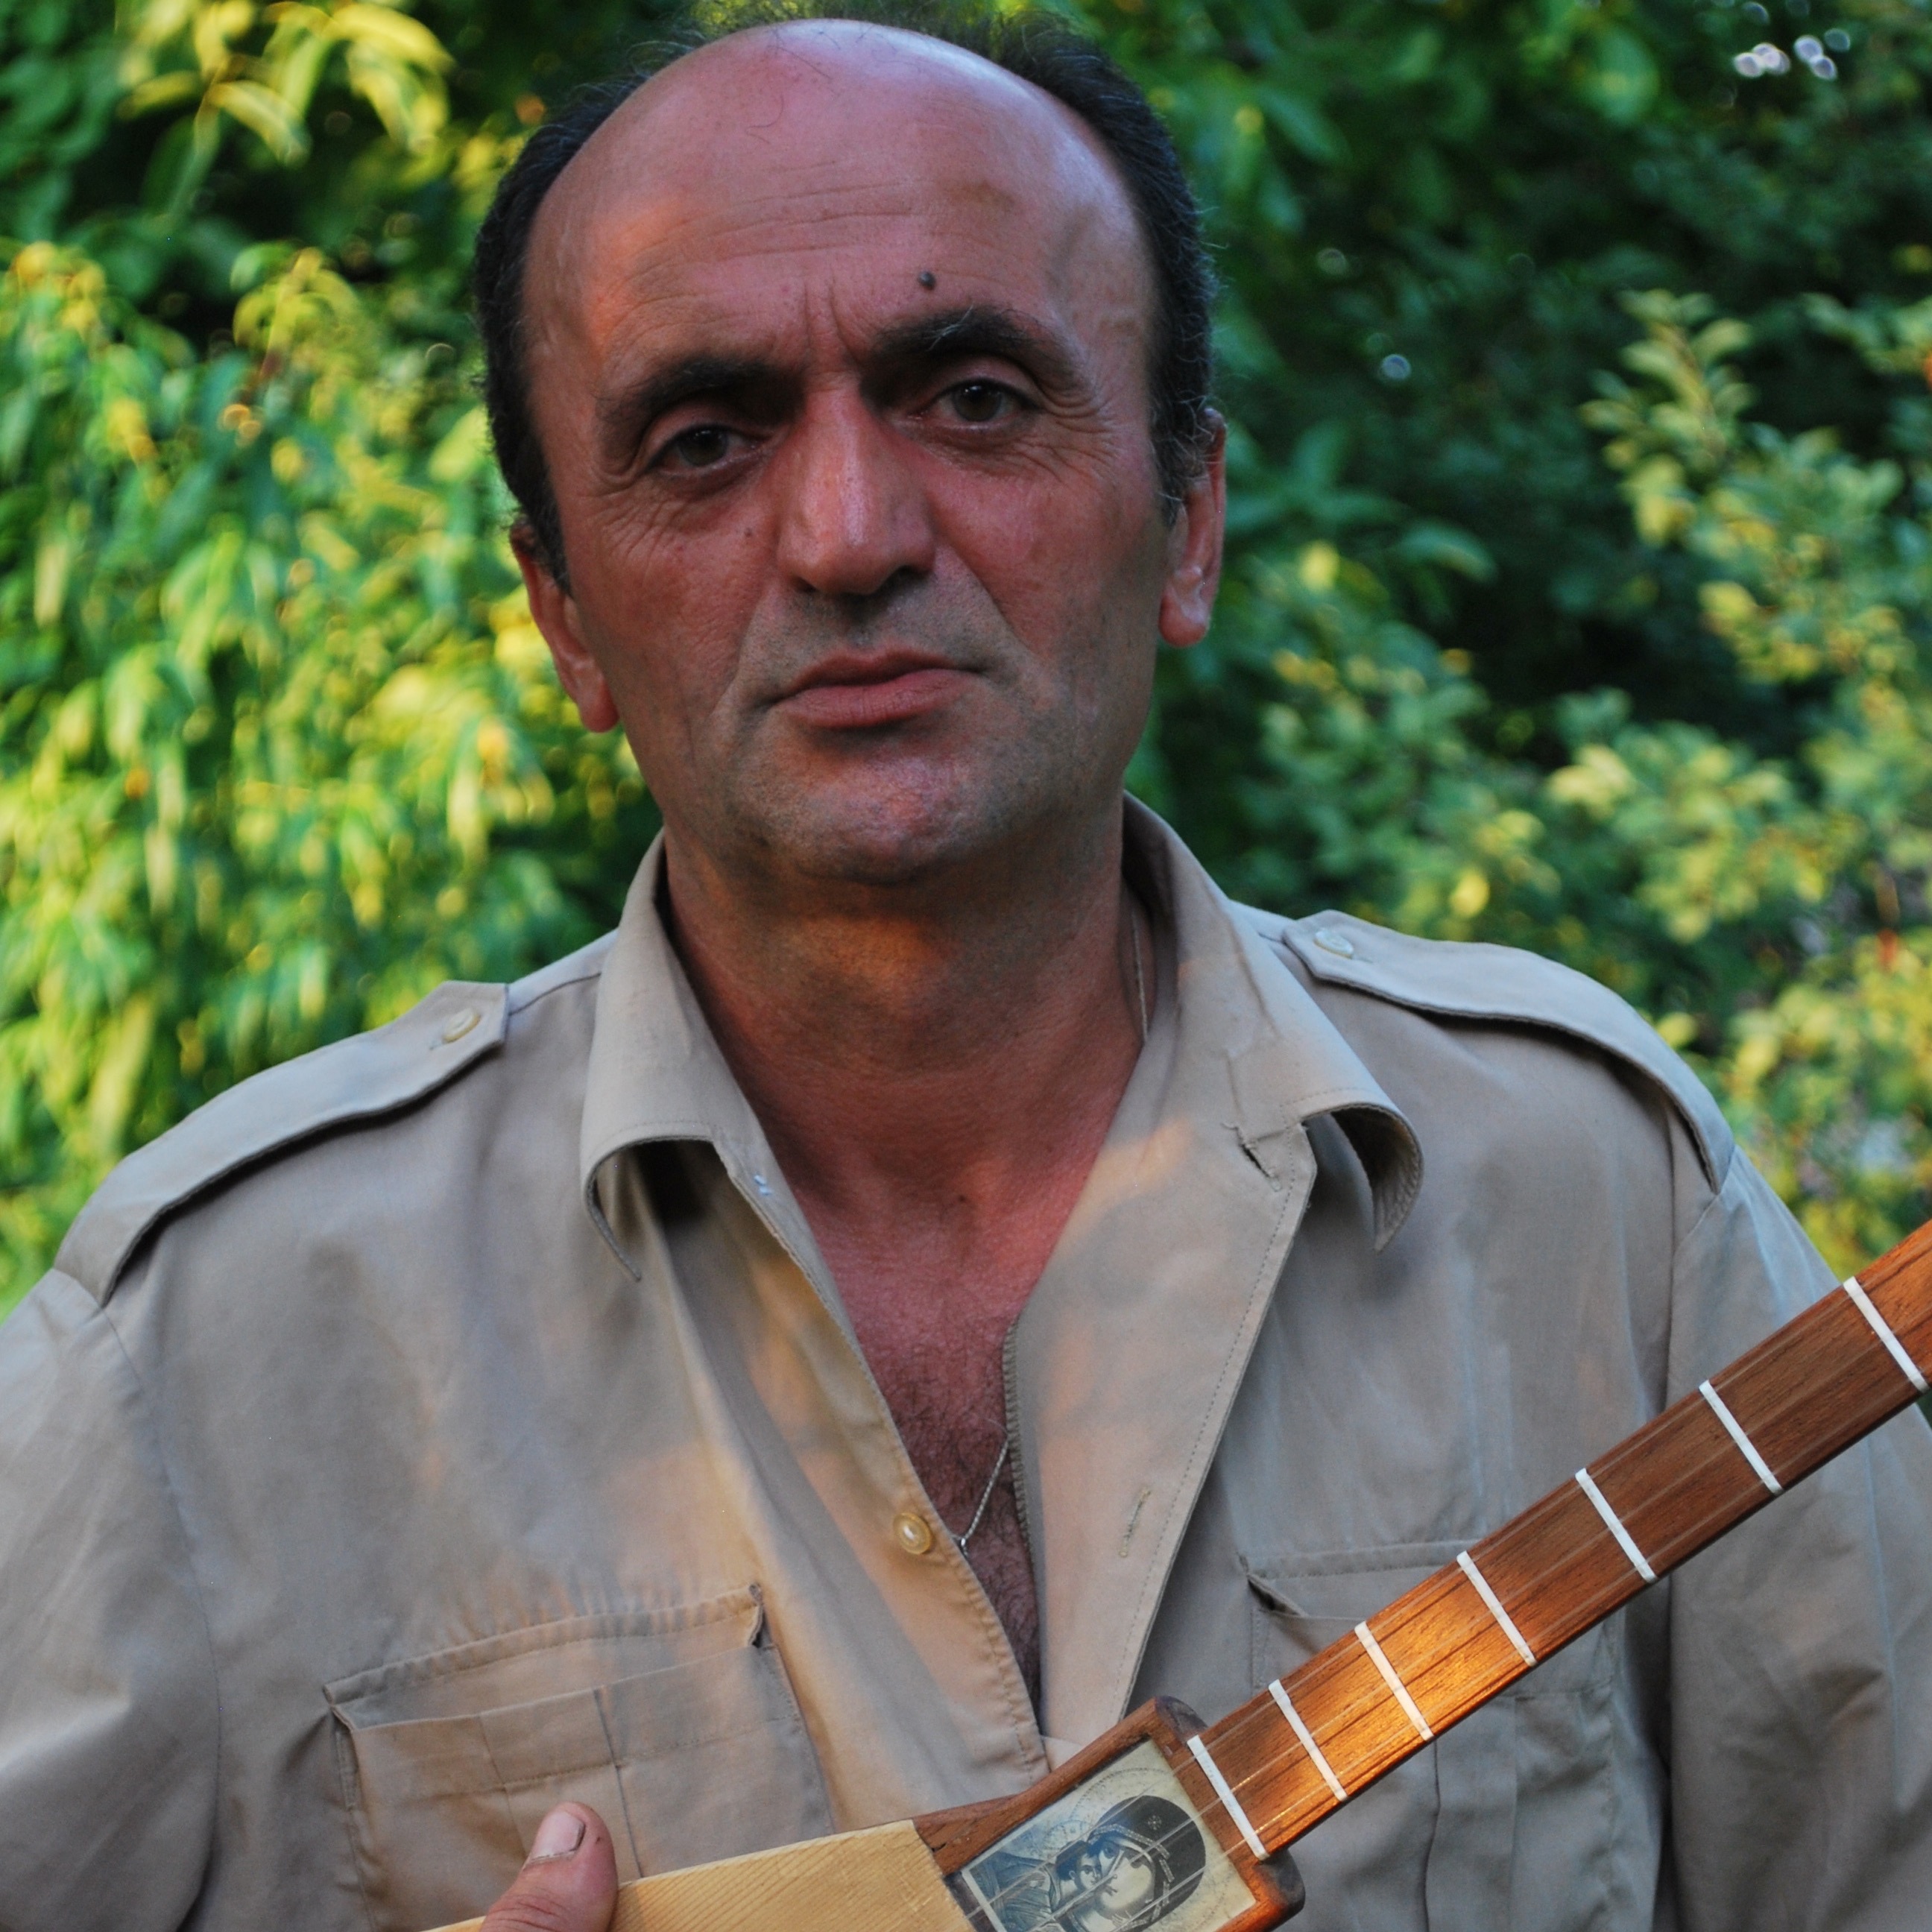 Malkhaz Patarashvili